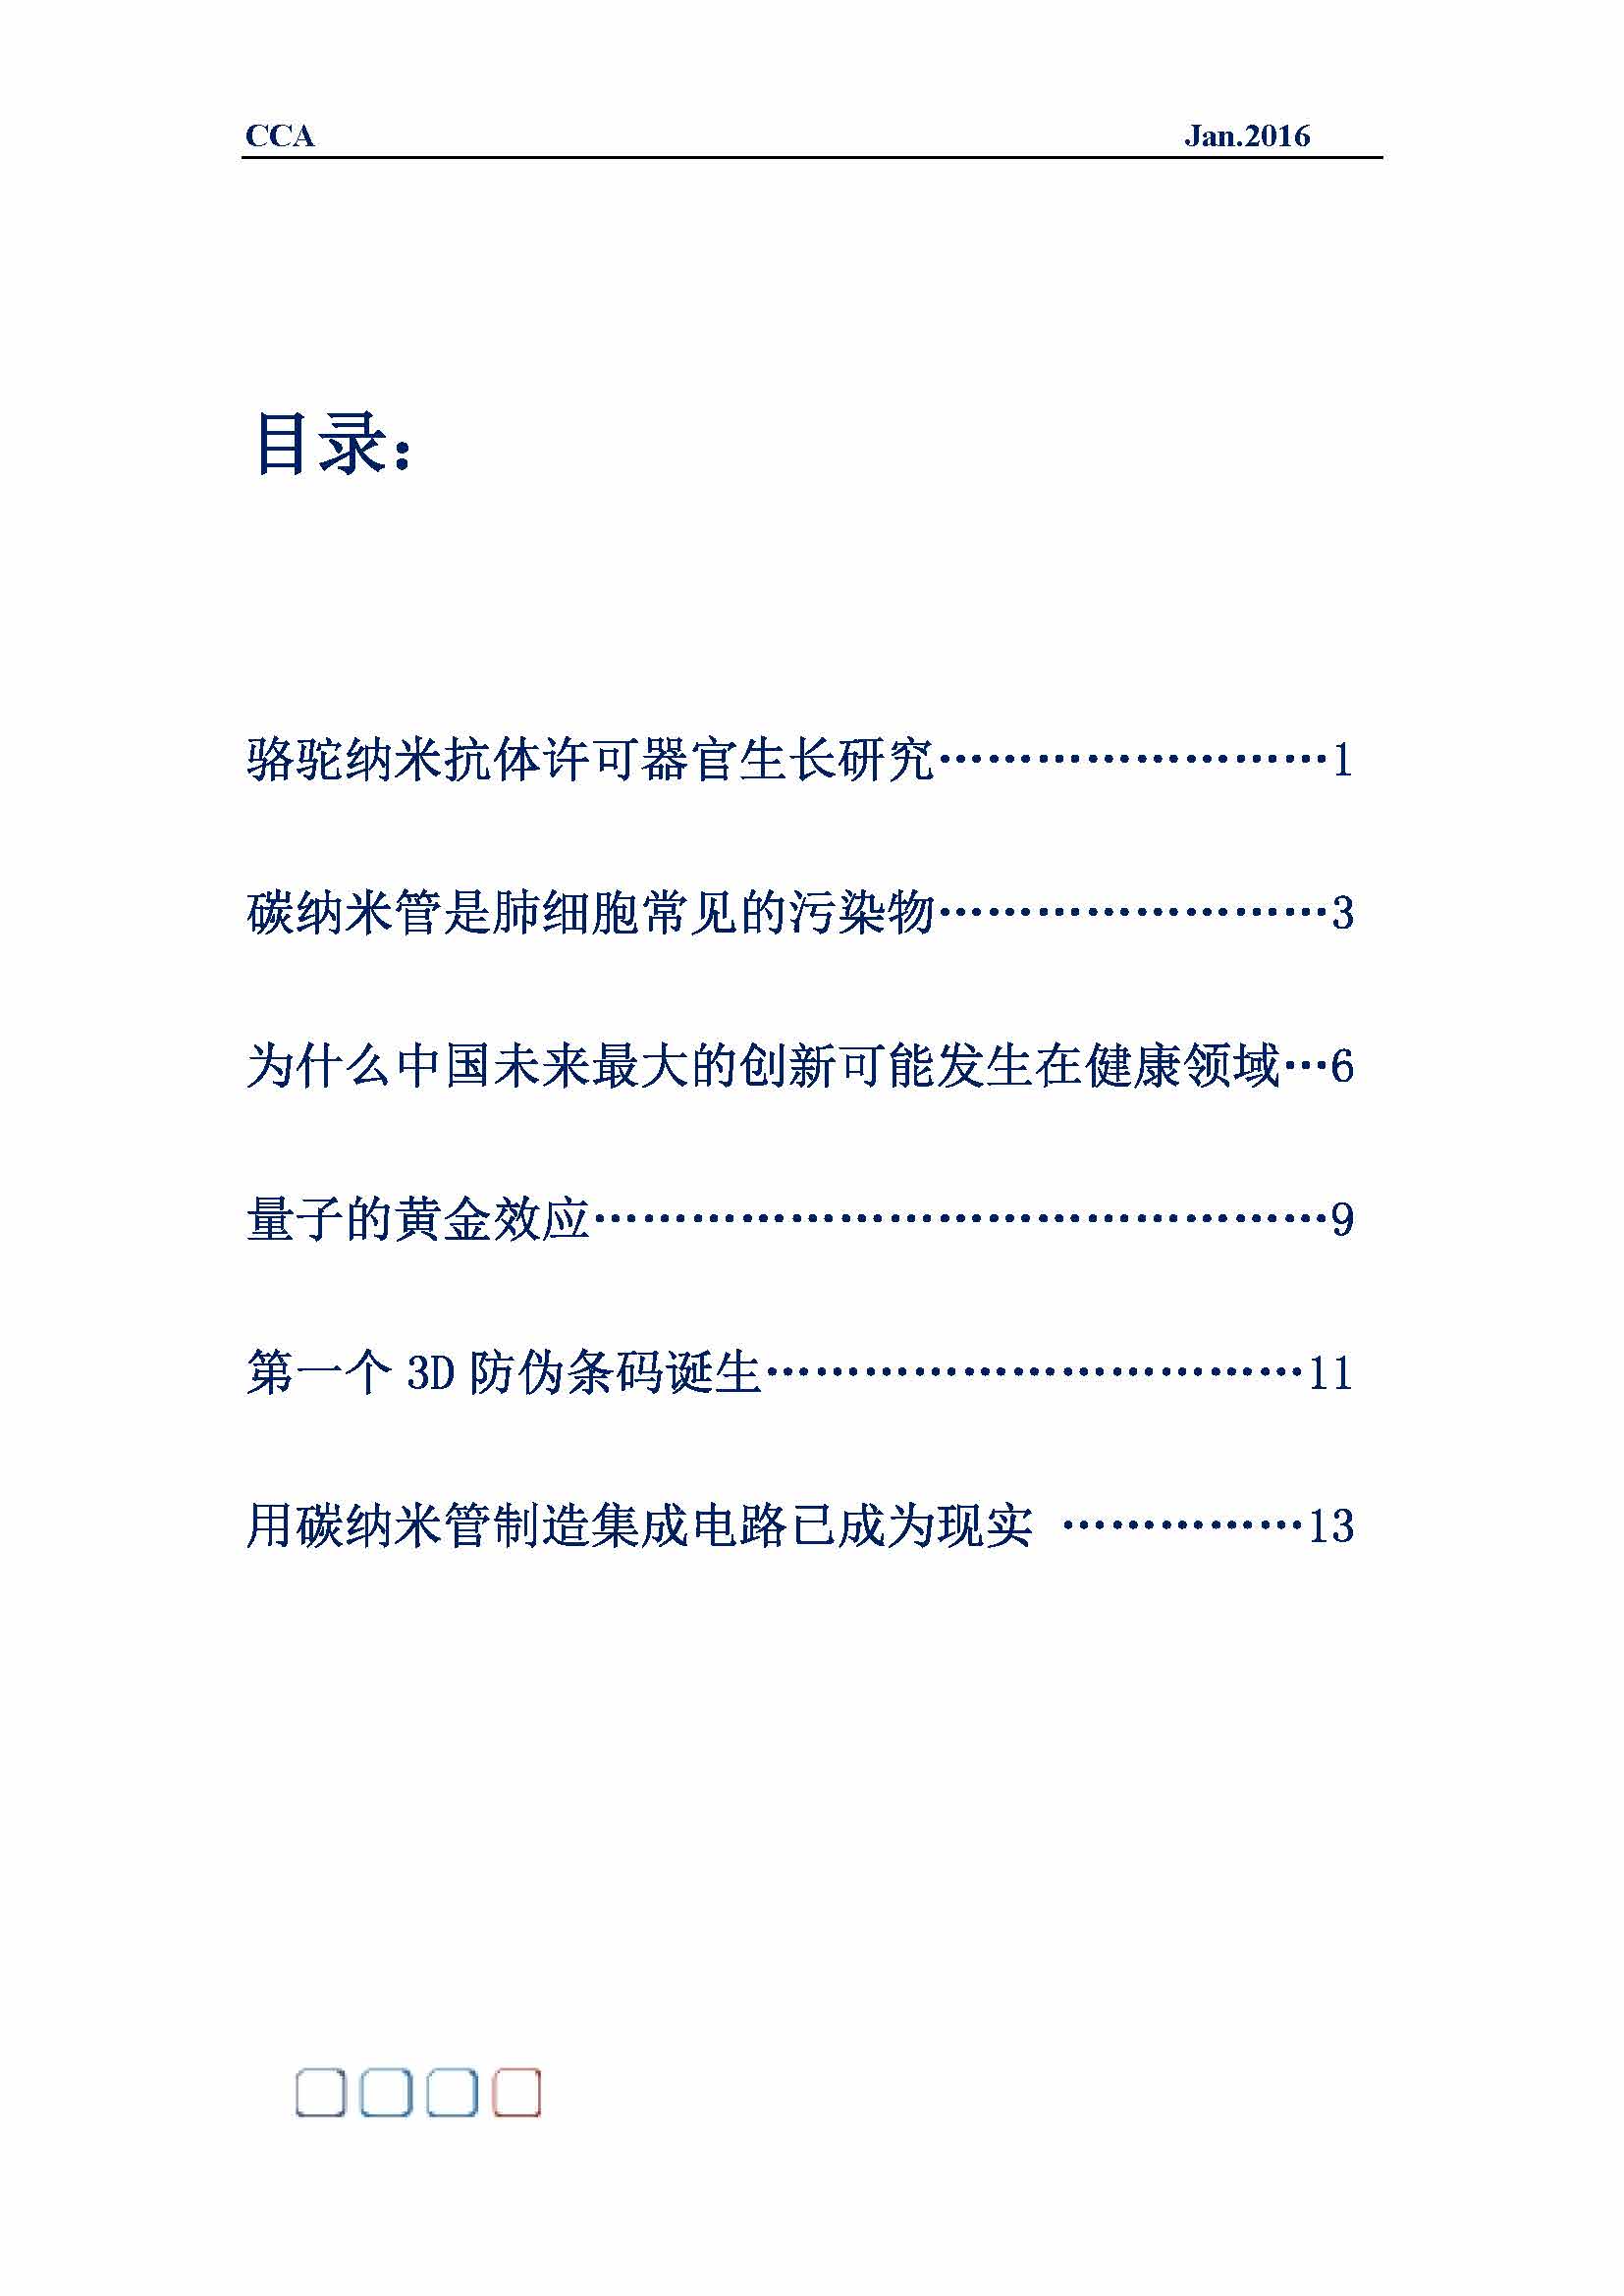 中国科技咨询协会国际快讯（第二十六期）_页面_02.jpg